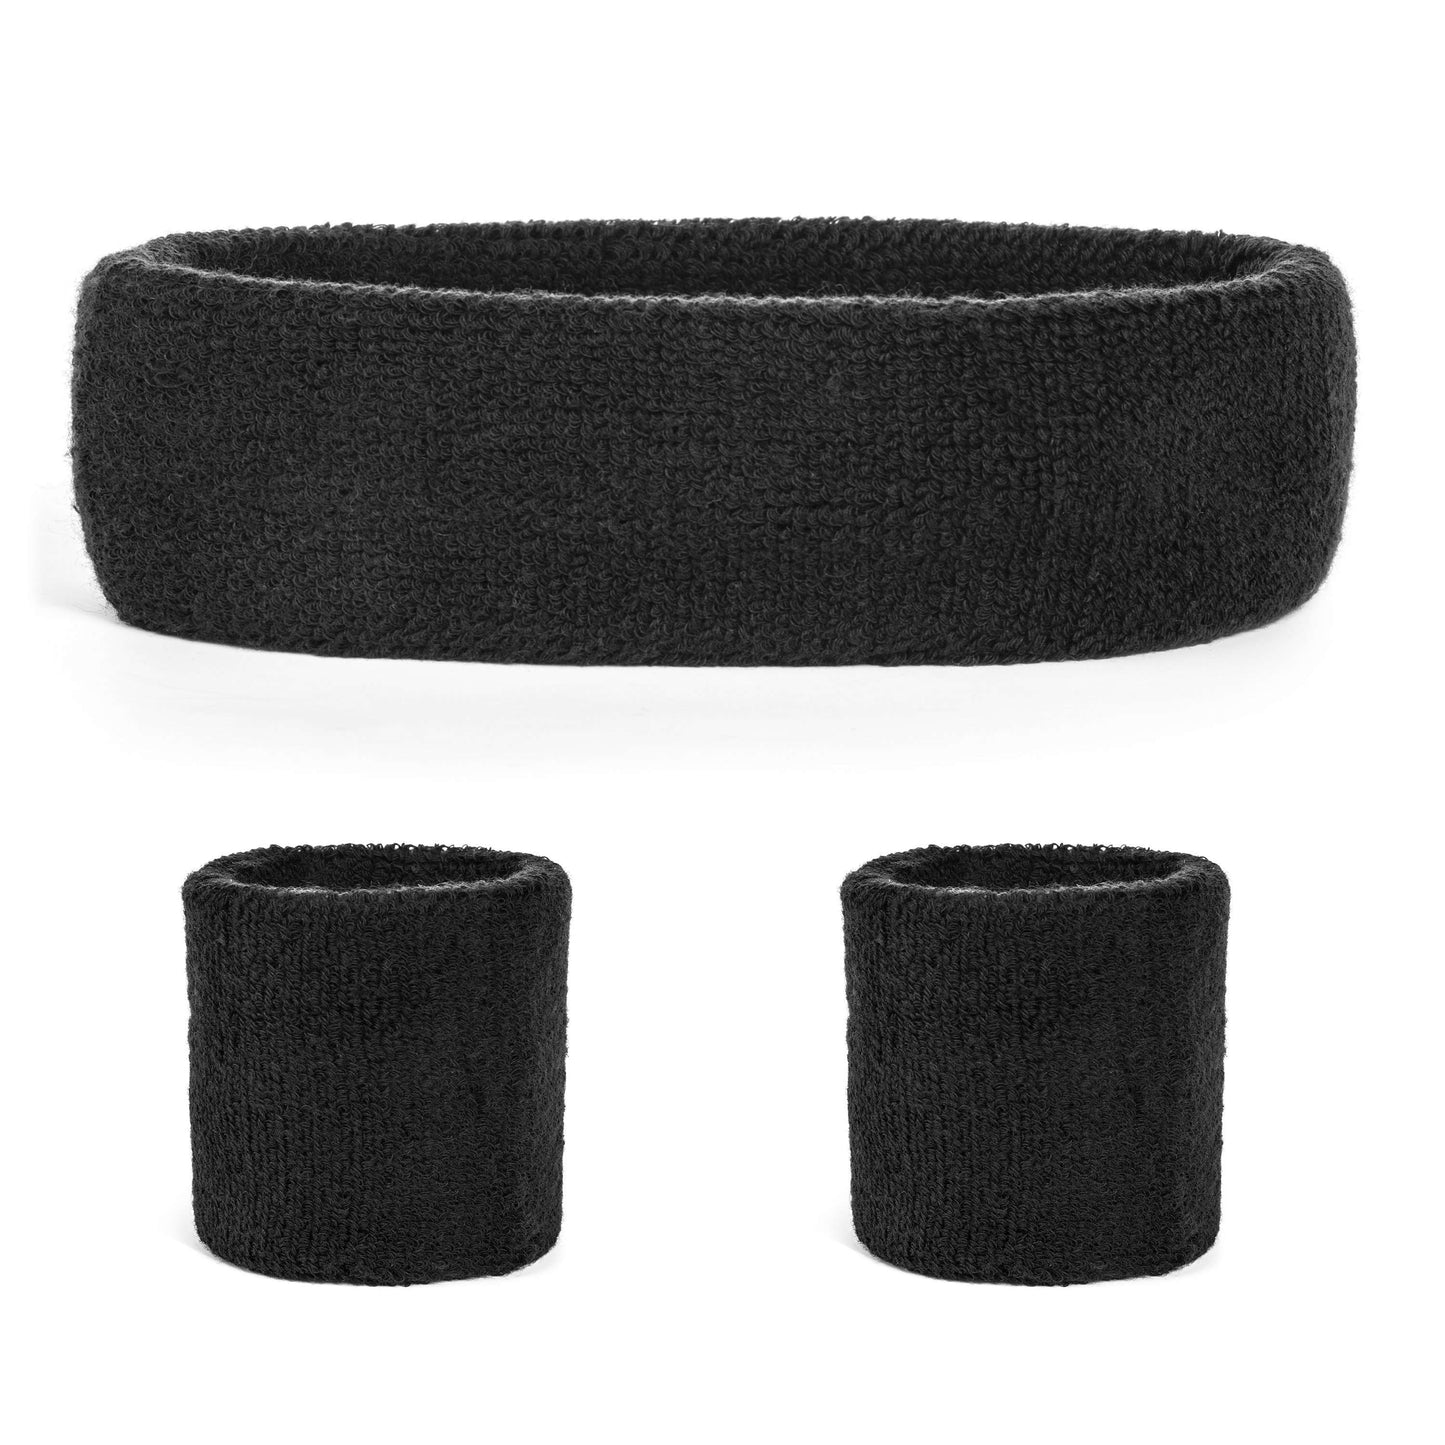 Suddora Sweatband Set (1 Headband & 2 Wristbands) - Black